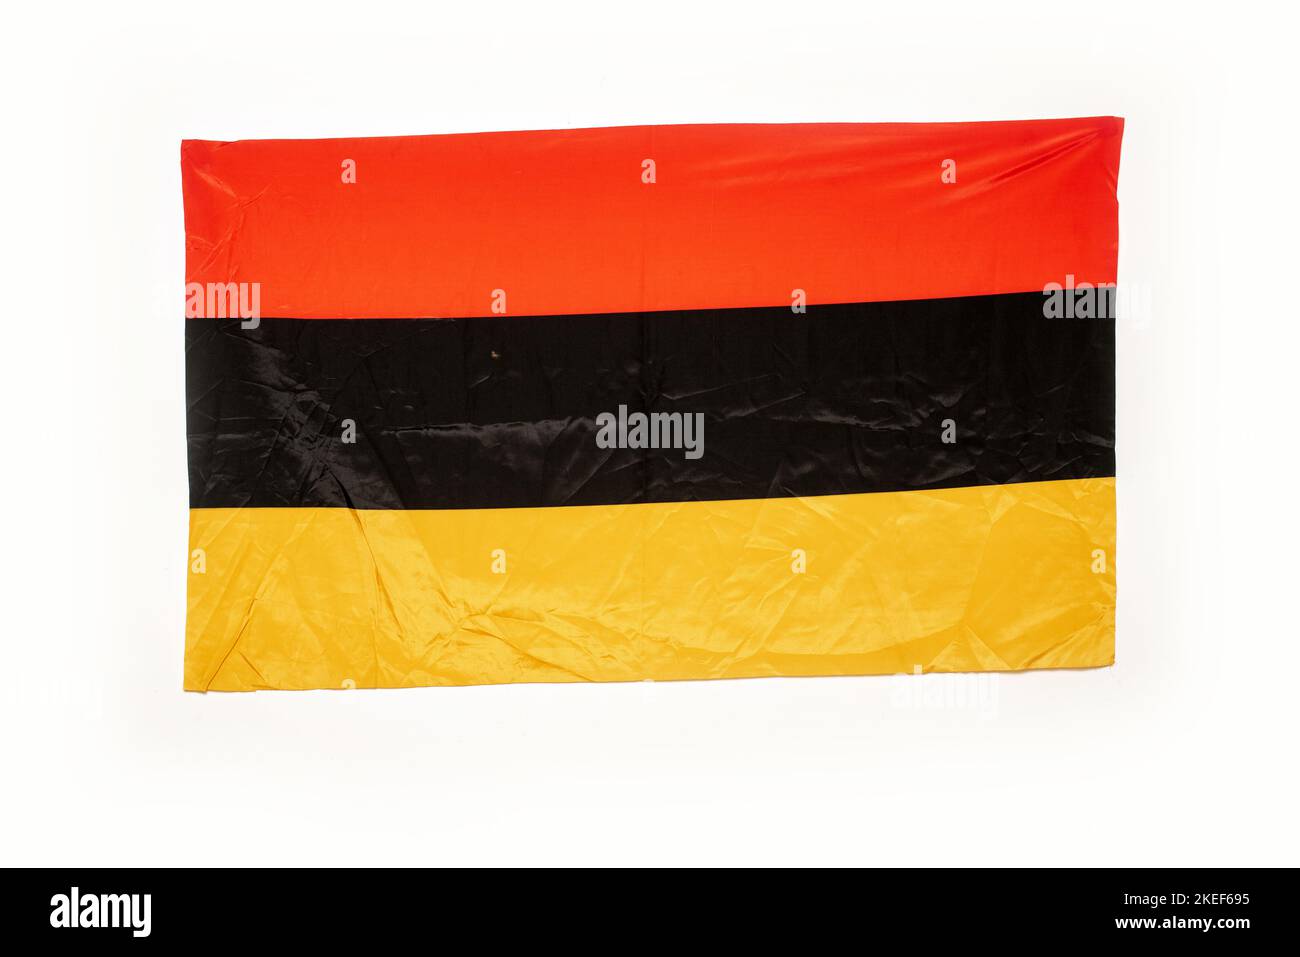 Germany flag isolated on white background Stock Photo